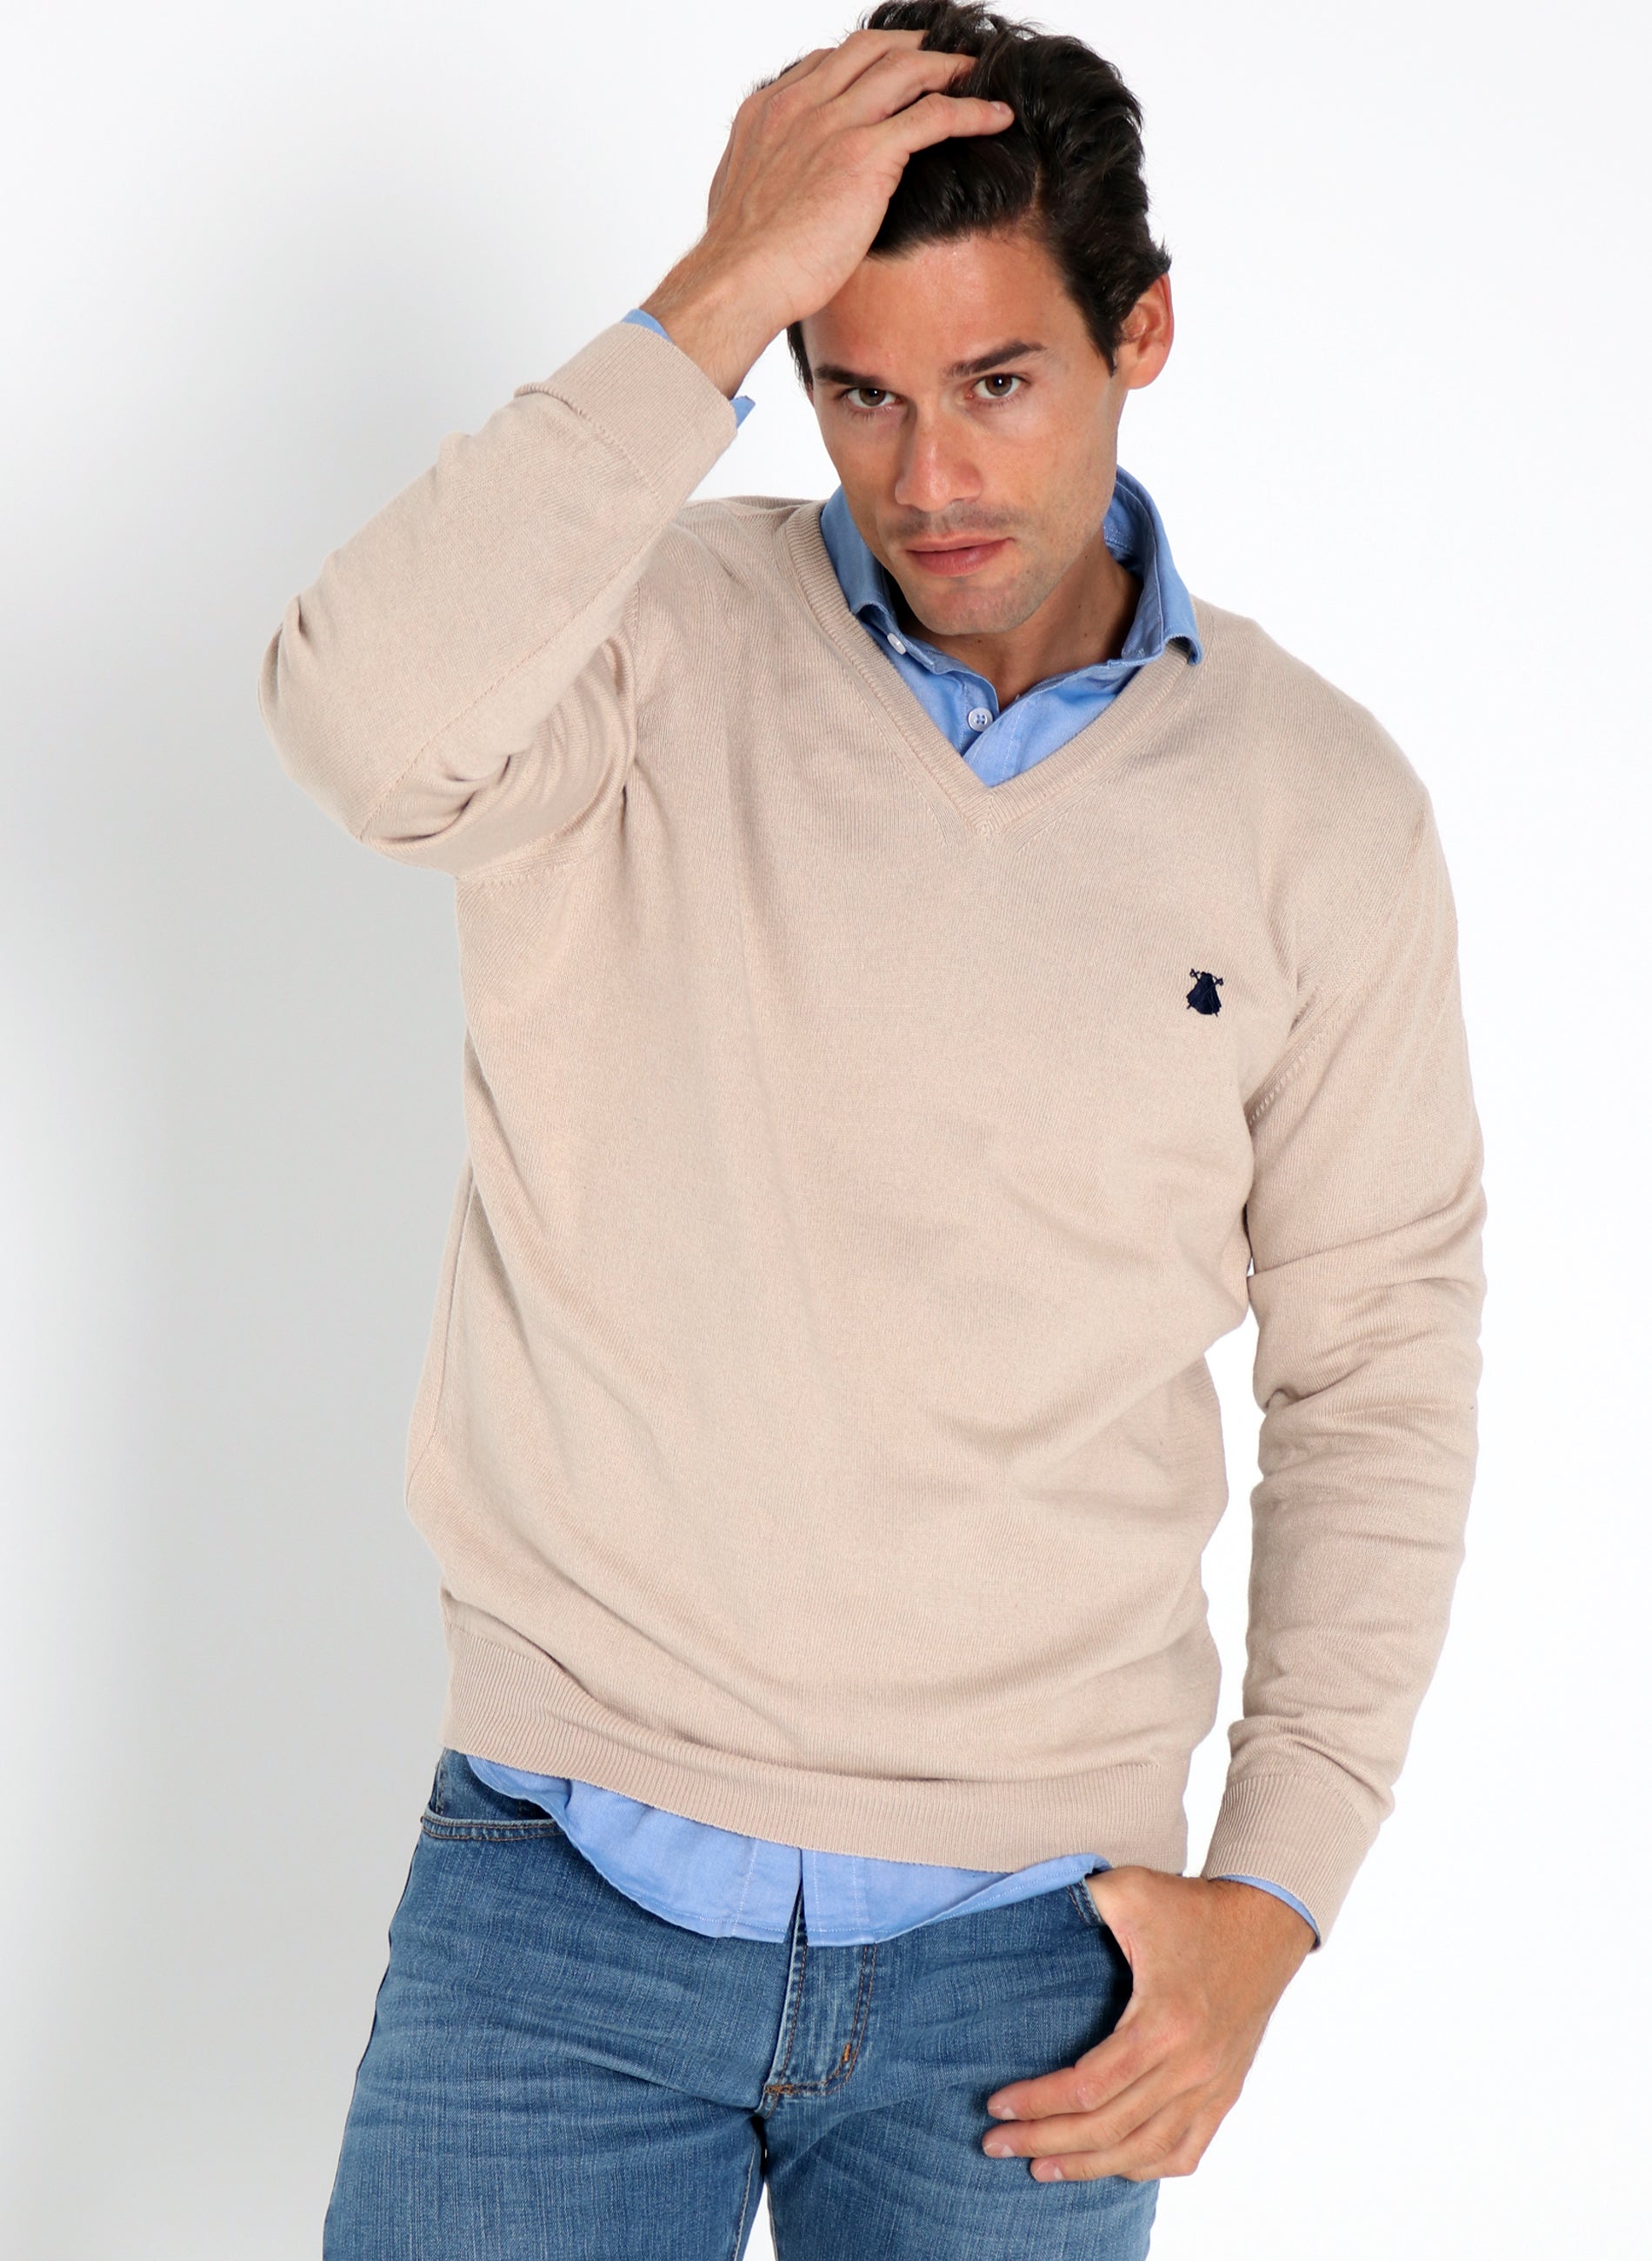 Men's V-Neck Sweater Camel Cashmere